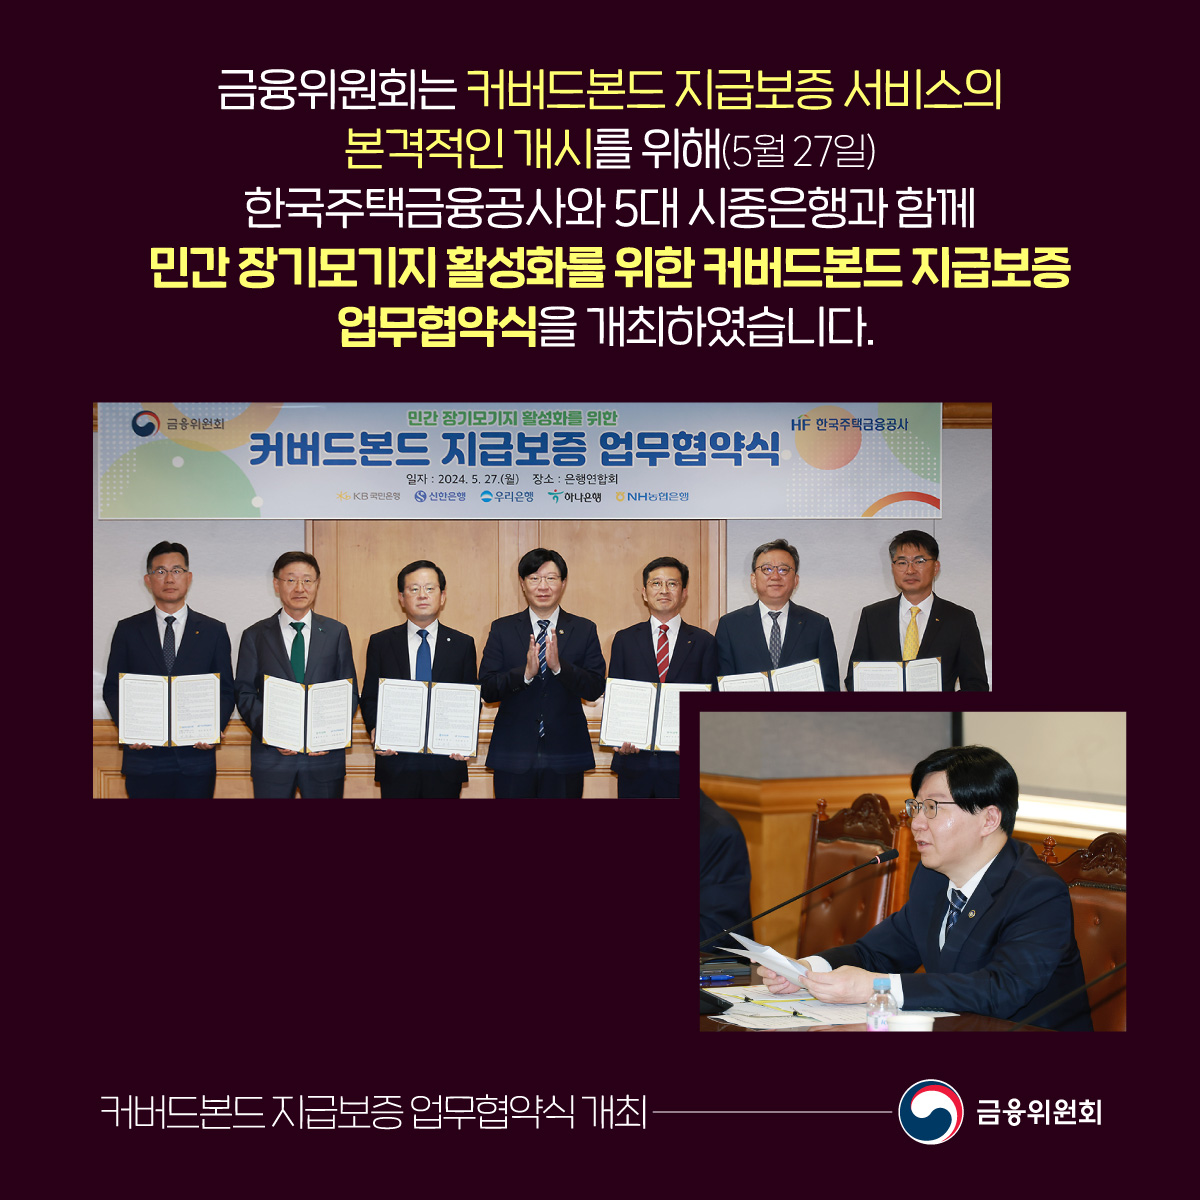 금융위원회는 커버드본드 지급보증 서비스의 본격적인 개시를 위해(5월 27일) 한국주택금융공사와 5대 시중은행과 함께 민간 장기모기지 활성화를 위한 커버드본드 지급보증 업무협약식을 개최하였습니다. 